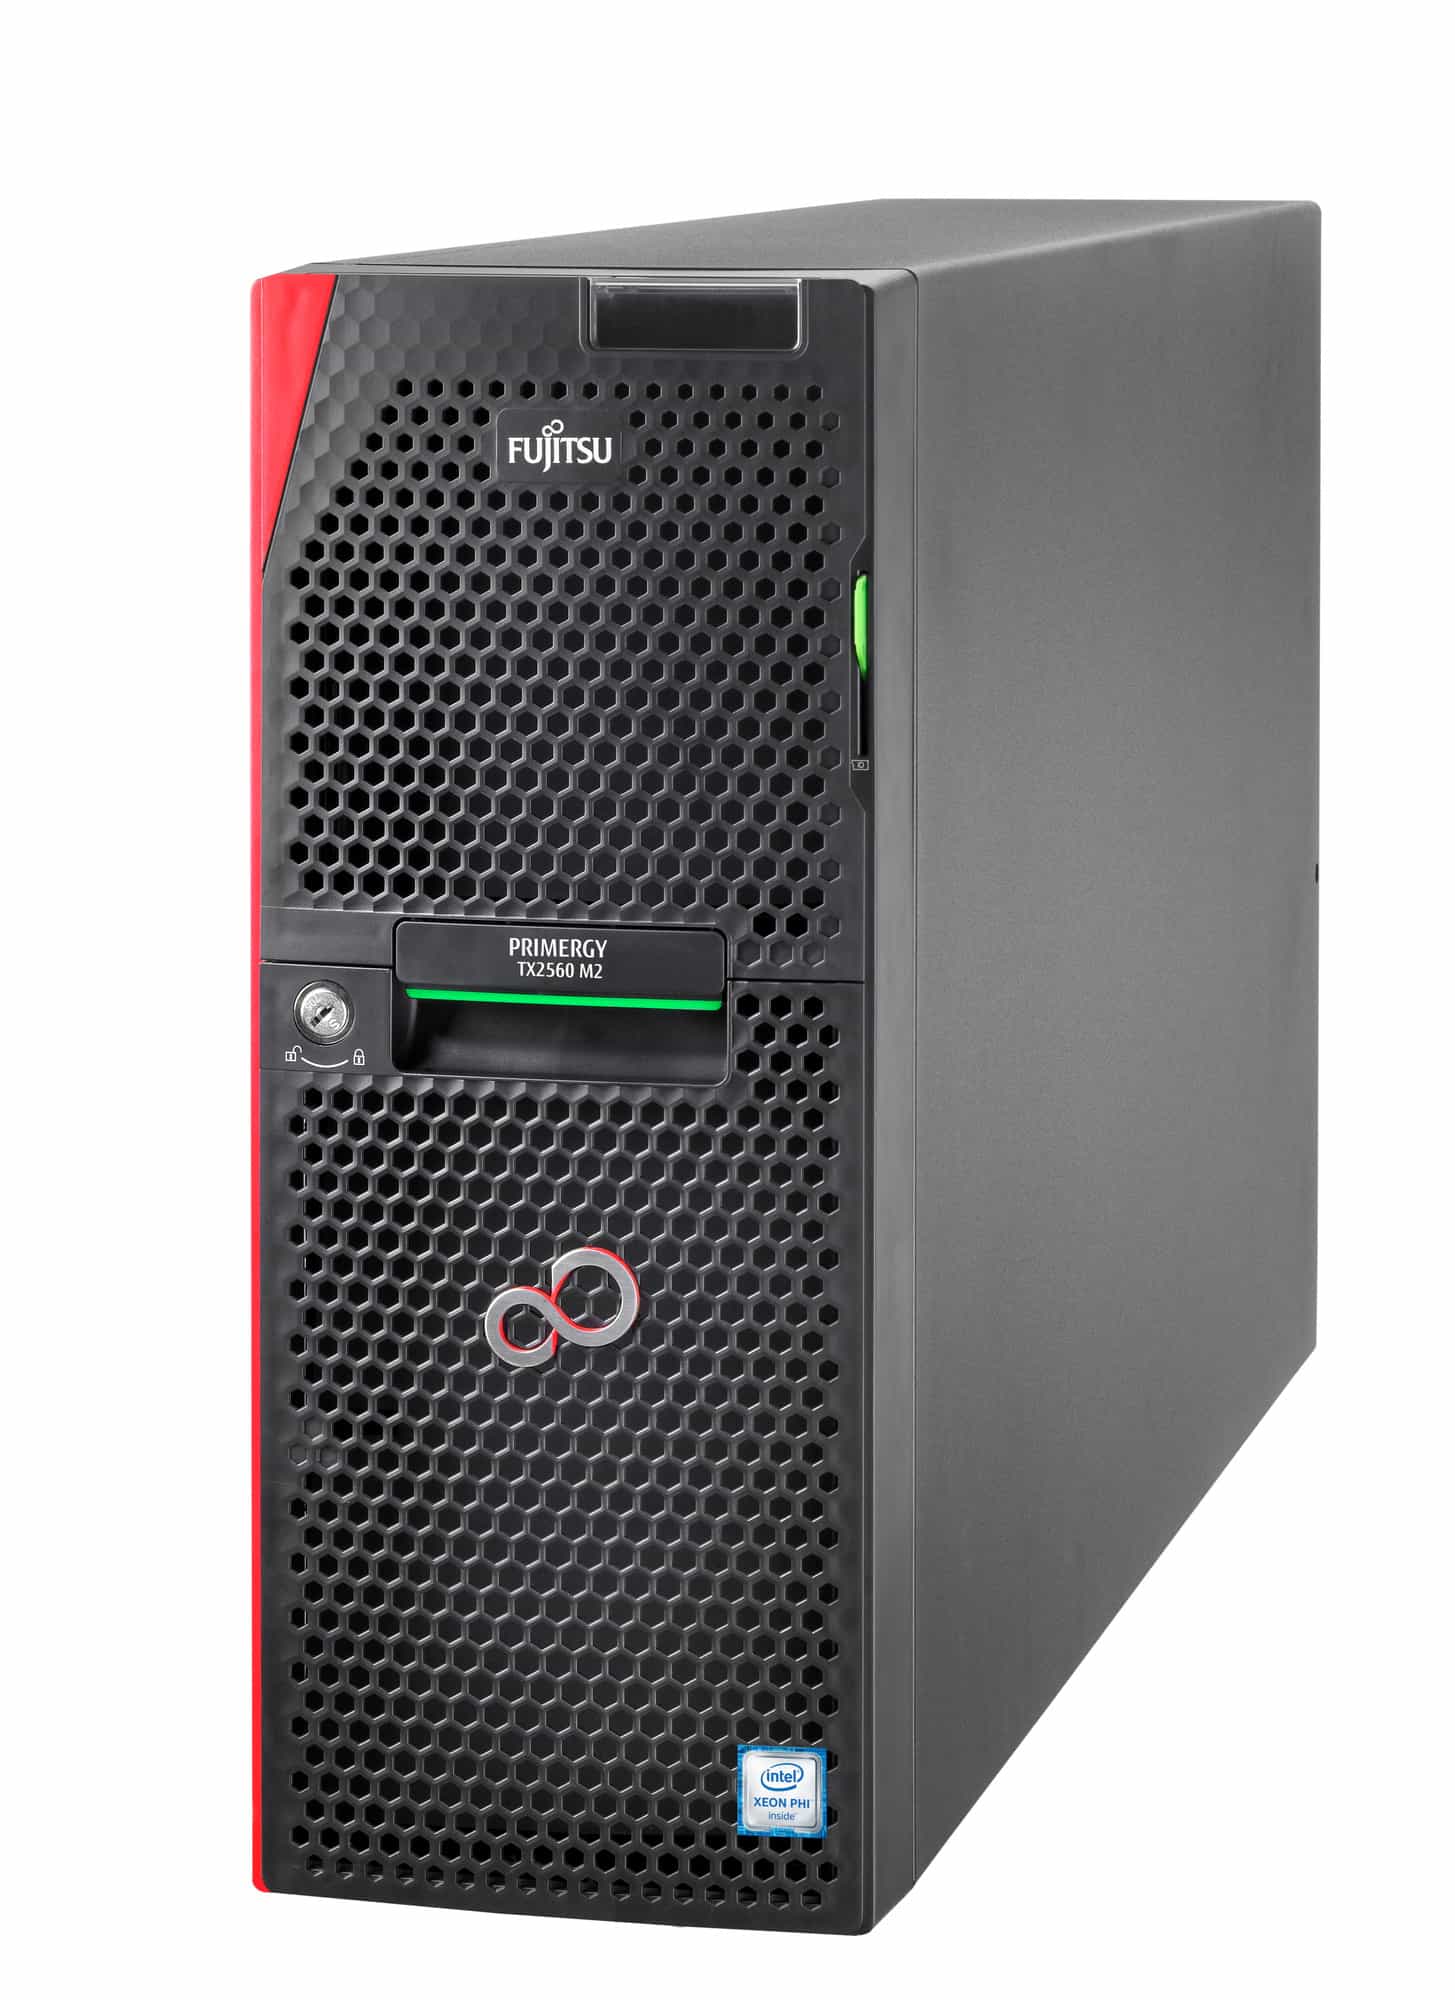 Напольный сервер Fujitsu Primergy PY TX2560 M2 1ая конфигурация-1